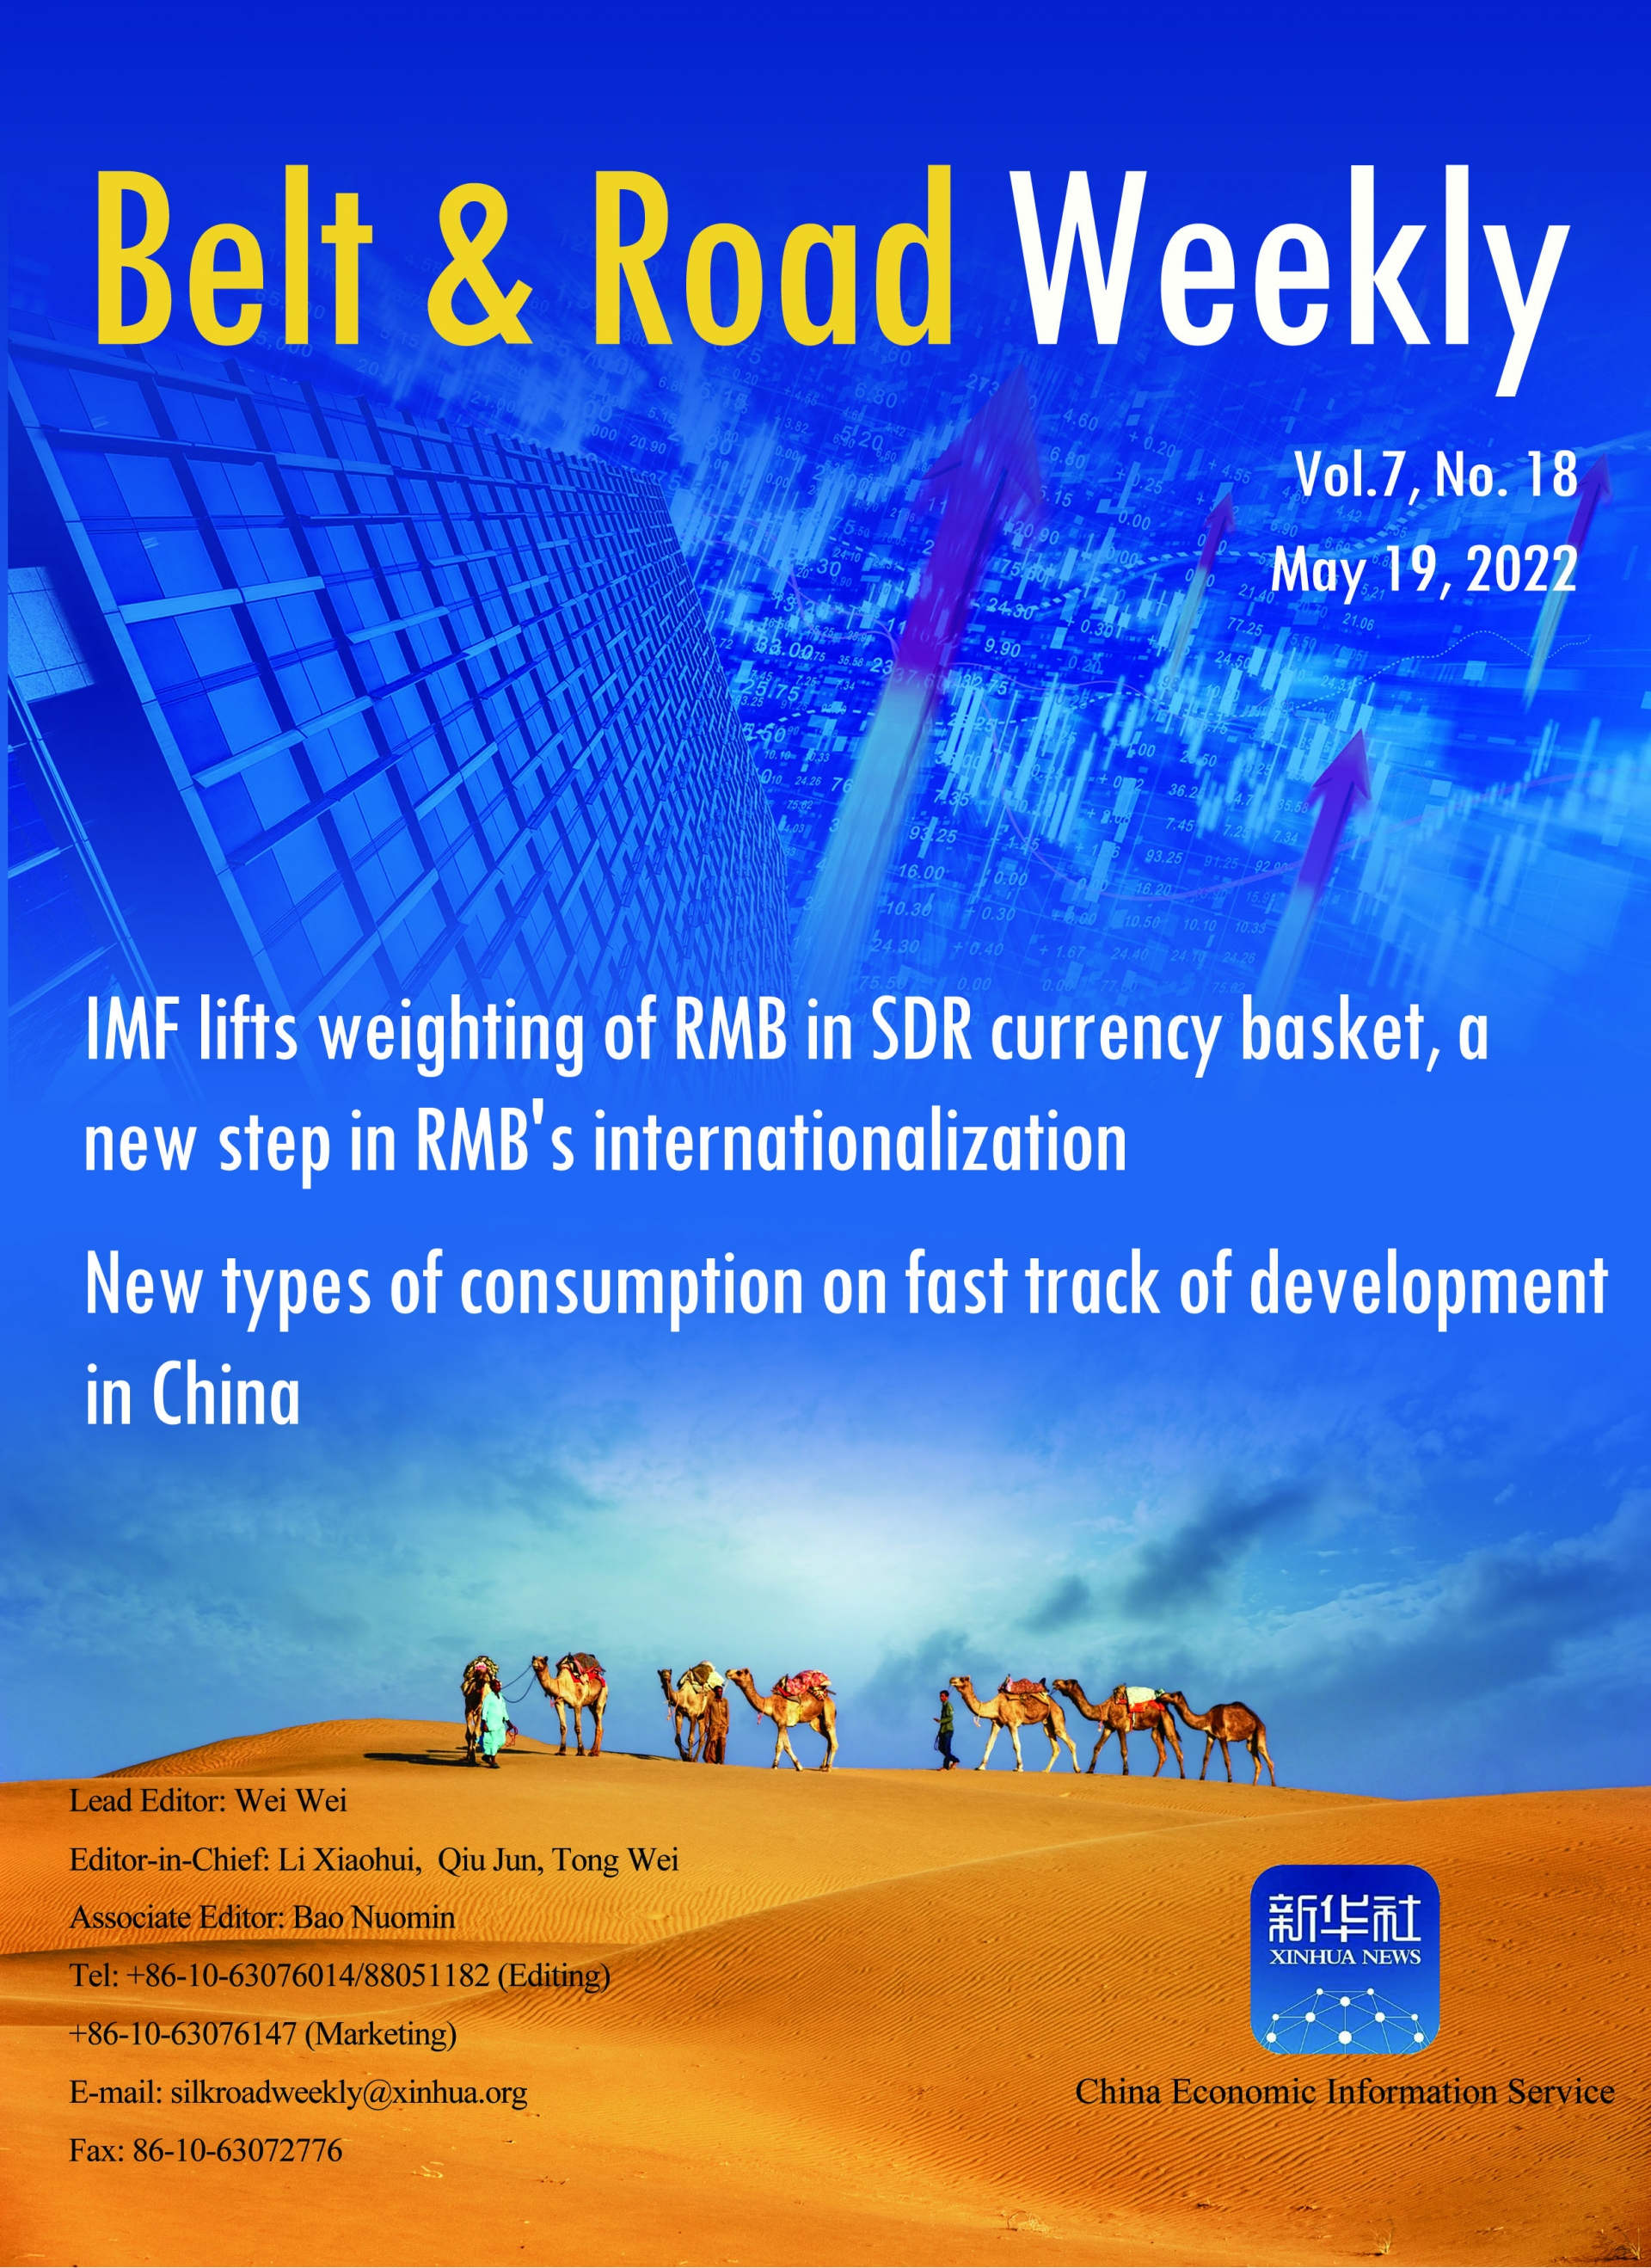 Belt & Road Weekly Vol.7, No.18